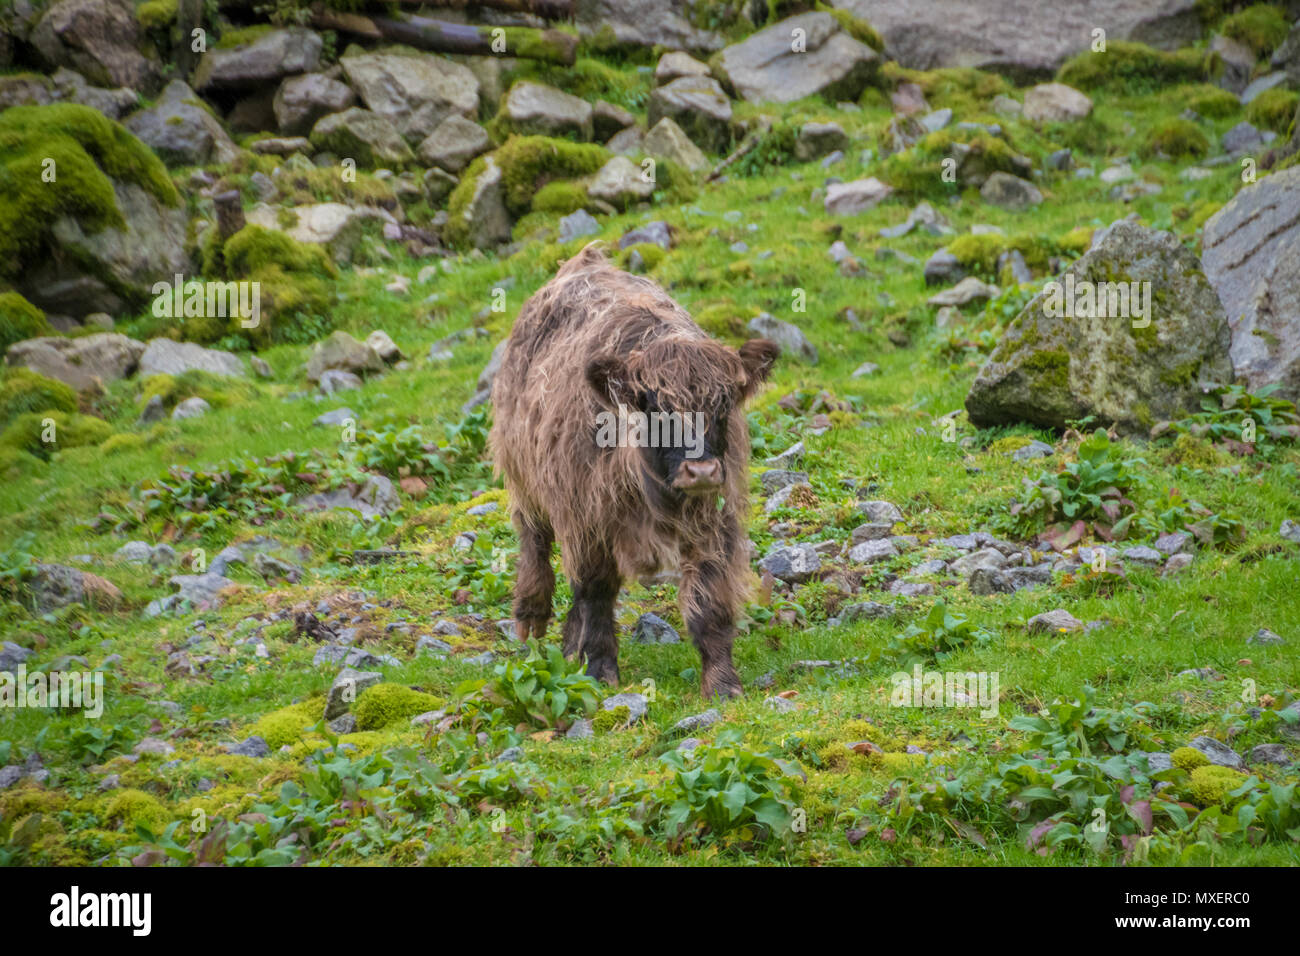 L'adolescent veau highland écossais de Bull sur le boeuf gras Banque D'Images